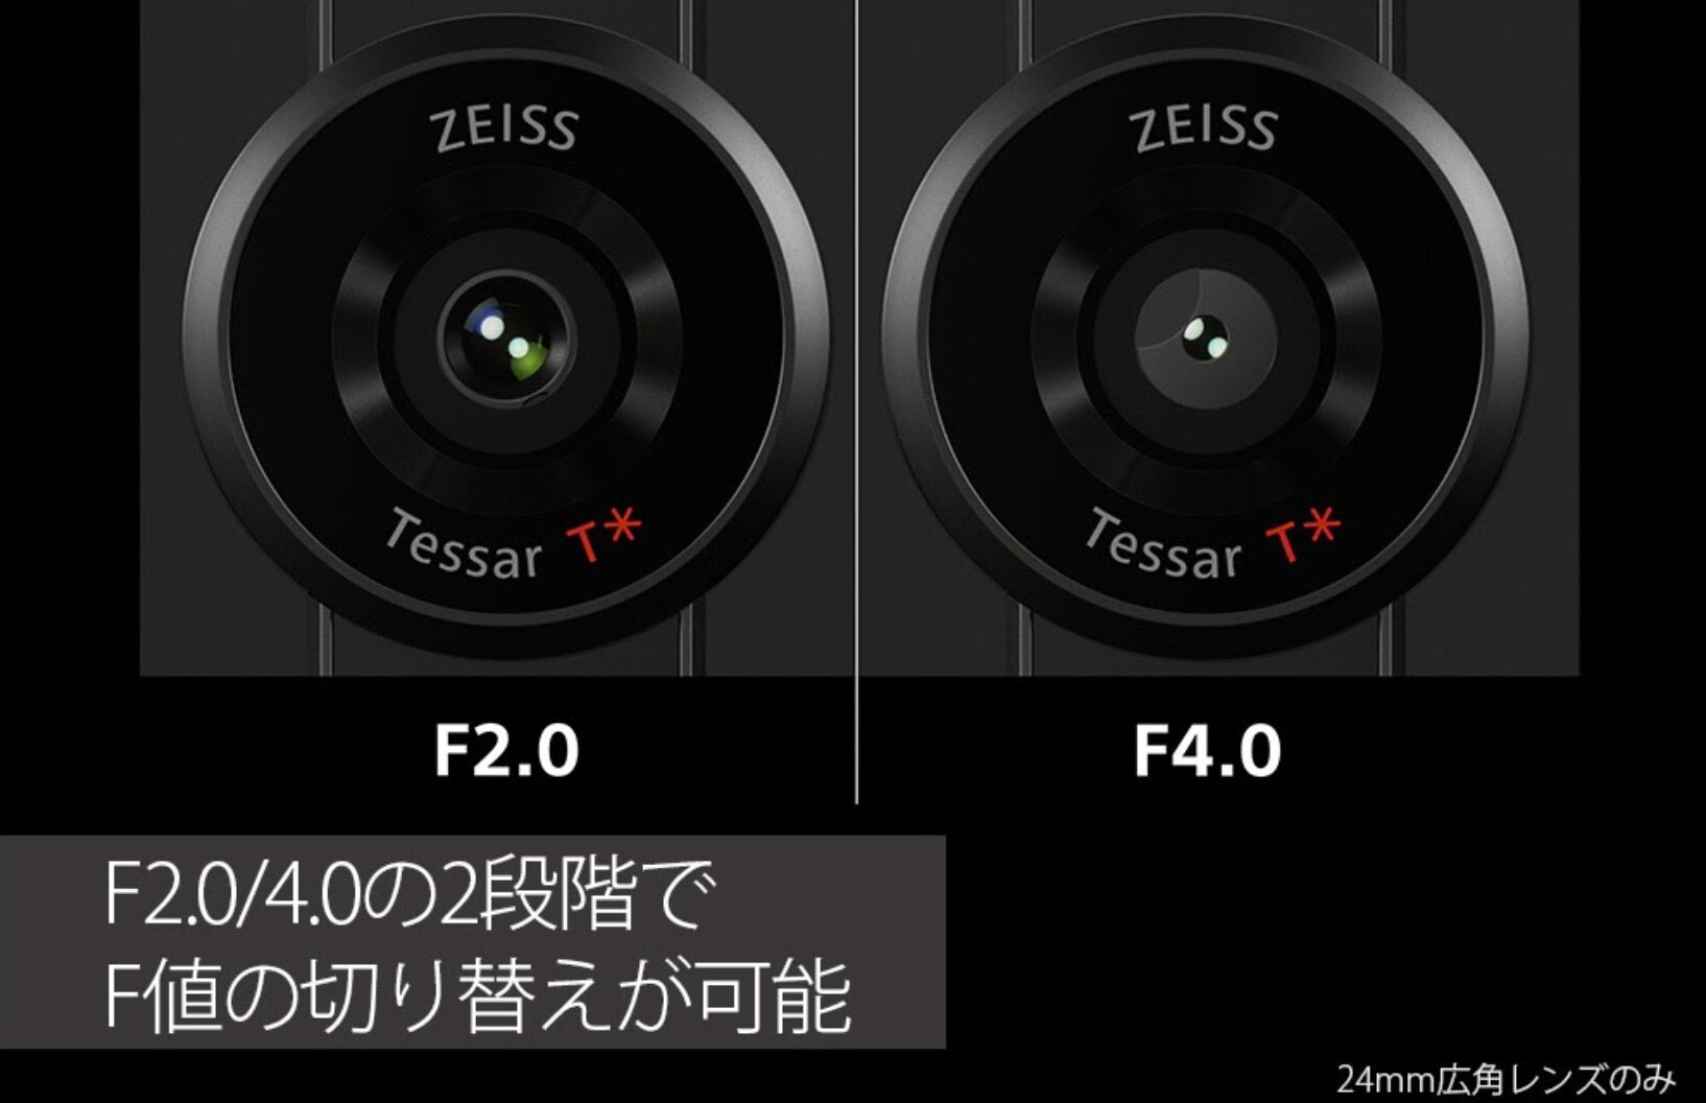 Sony Xperia Pro-I cameras